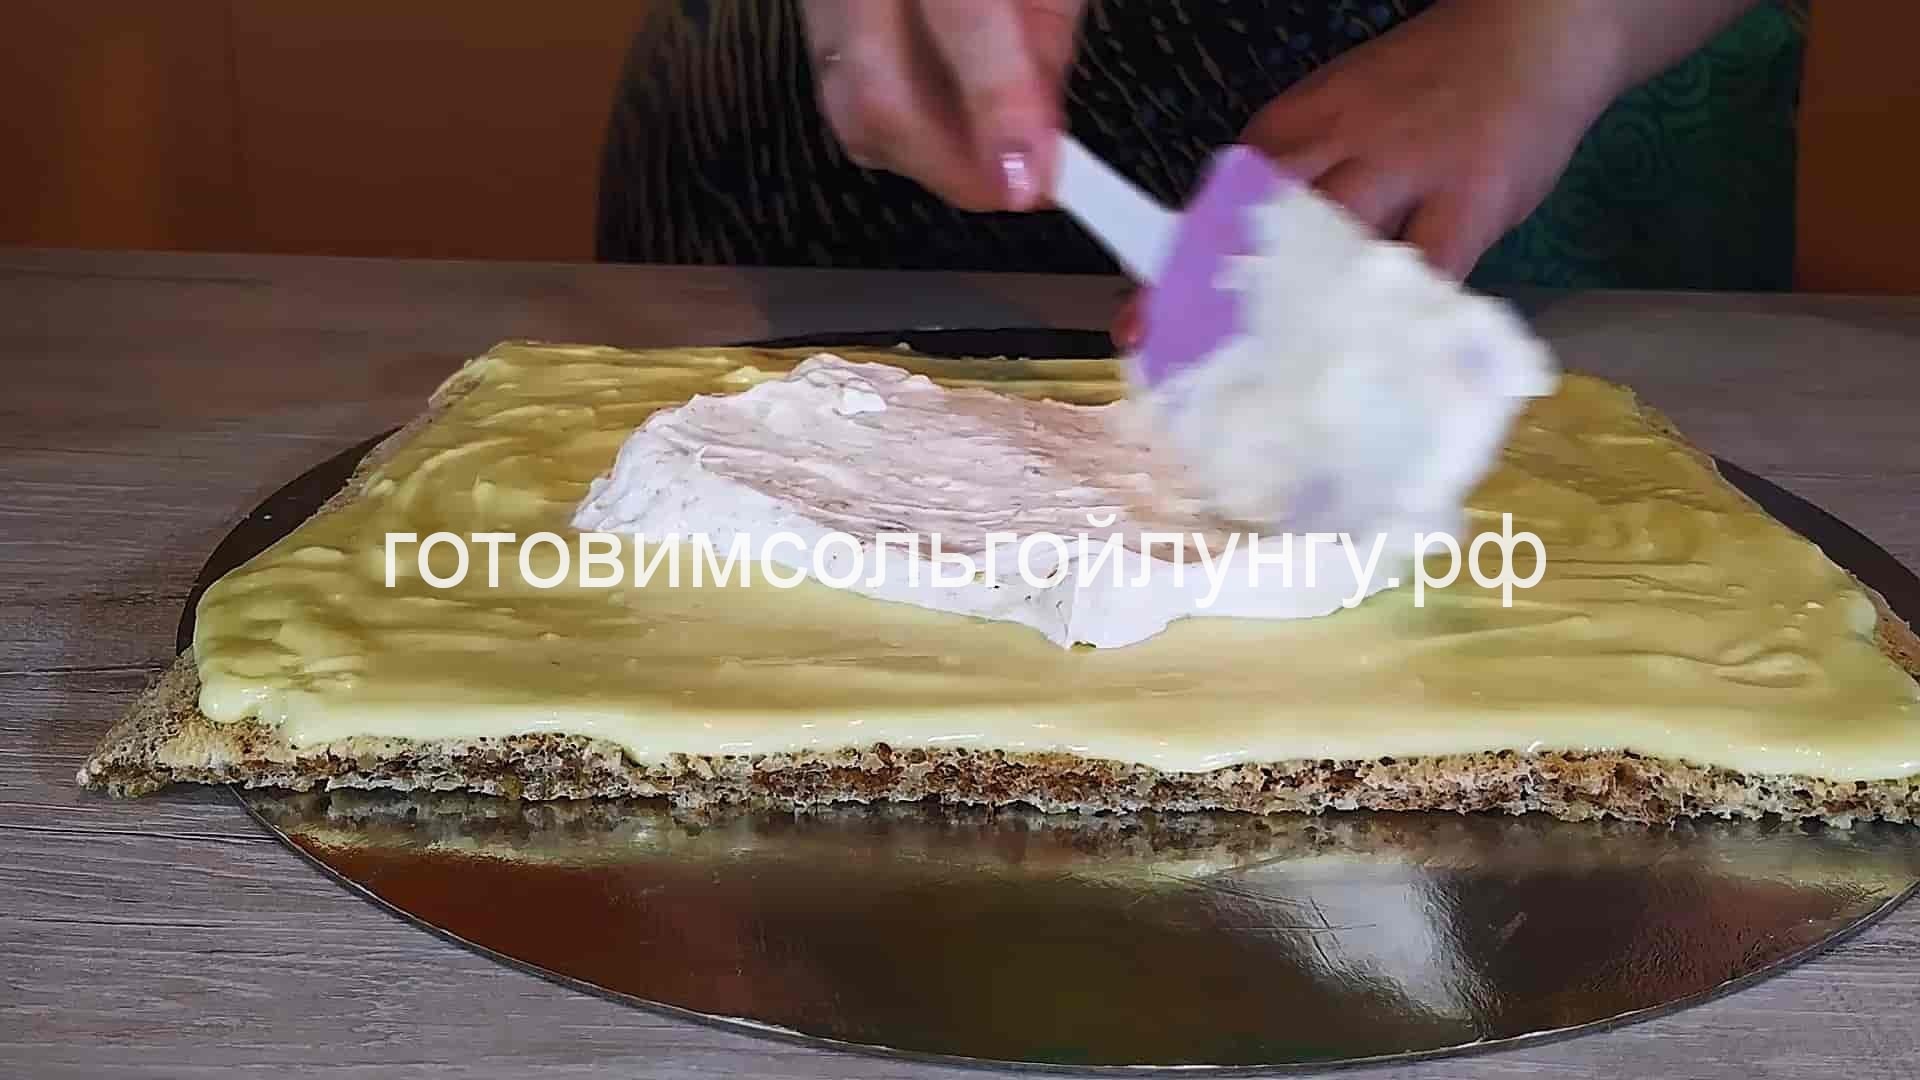 Сказочный Египетский Торт с Необыкновенным вкусом